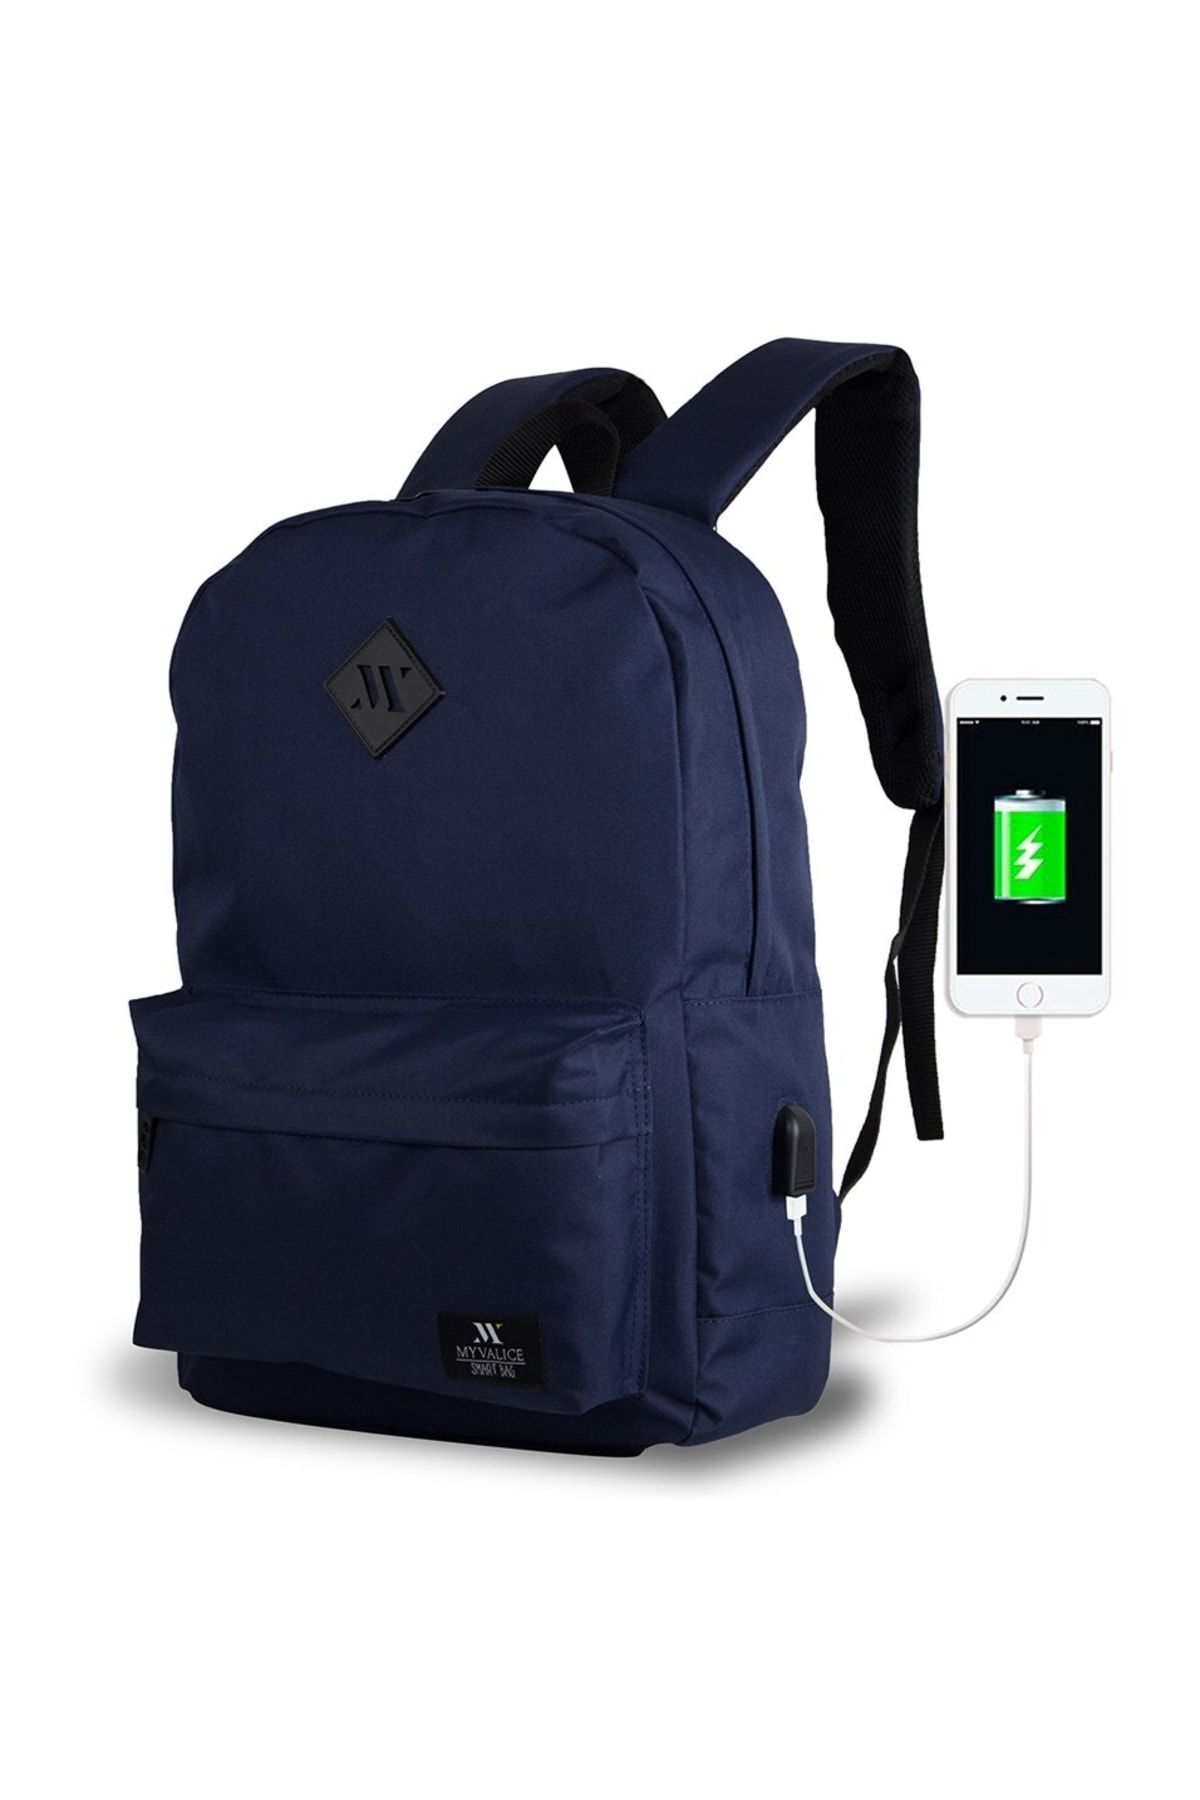 My Valice Smart Bag Specta Usb Şarj Girişli Akıllı Laptop Sırt Çantası Lacivert